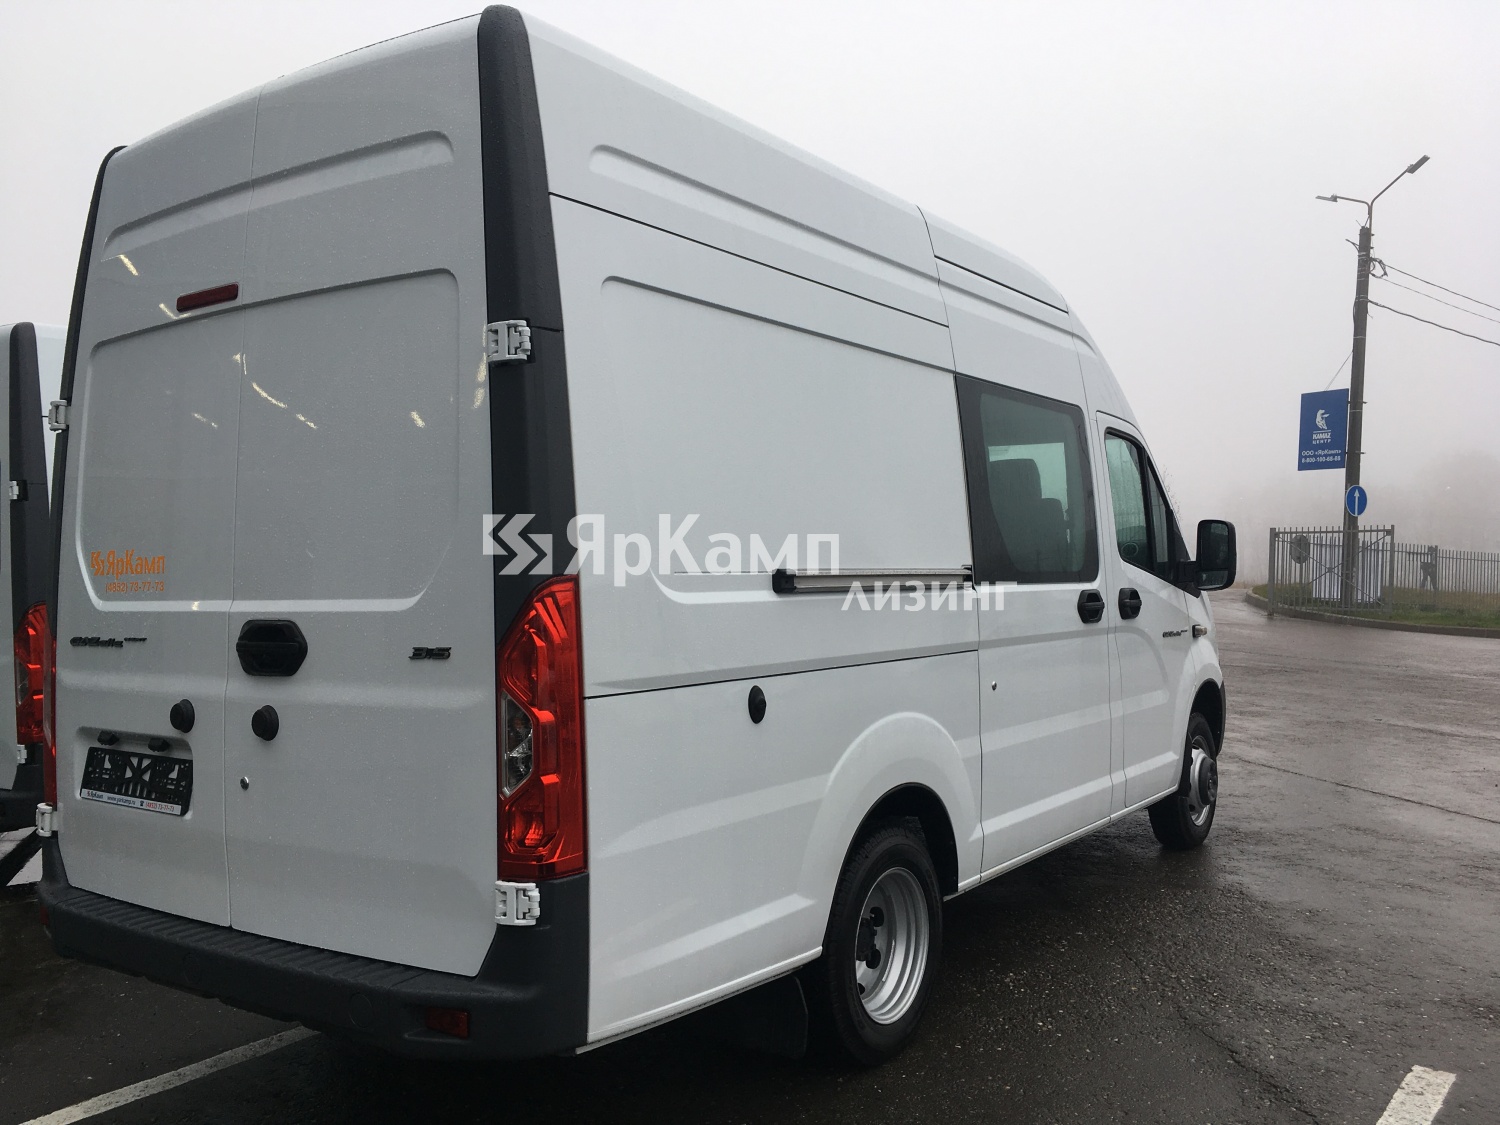 Грузовой цельнометаллический фургон ГАЗ-А32R23 передан в финансовую аренду